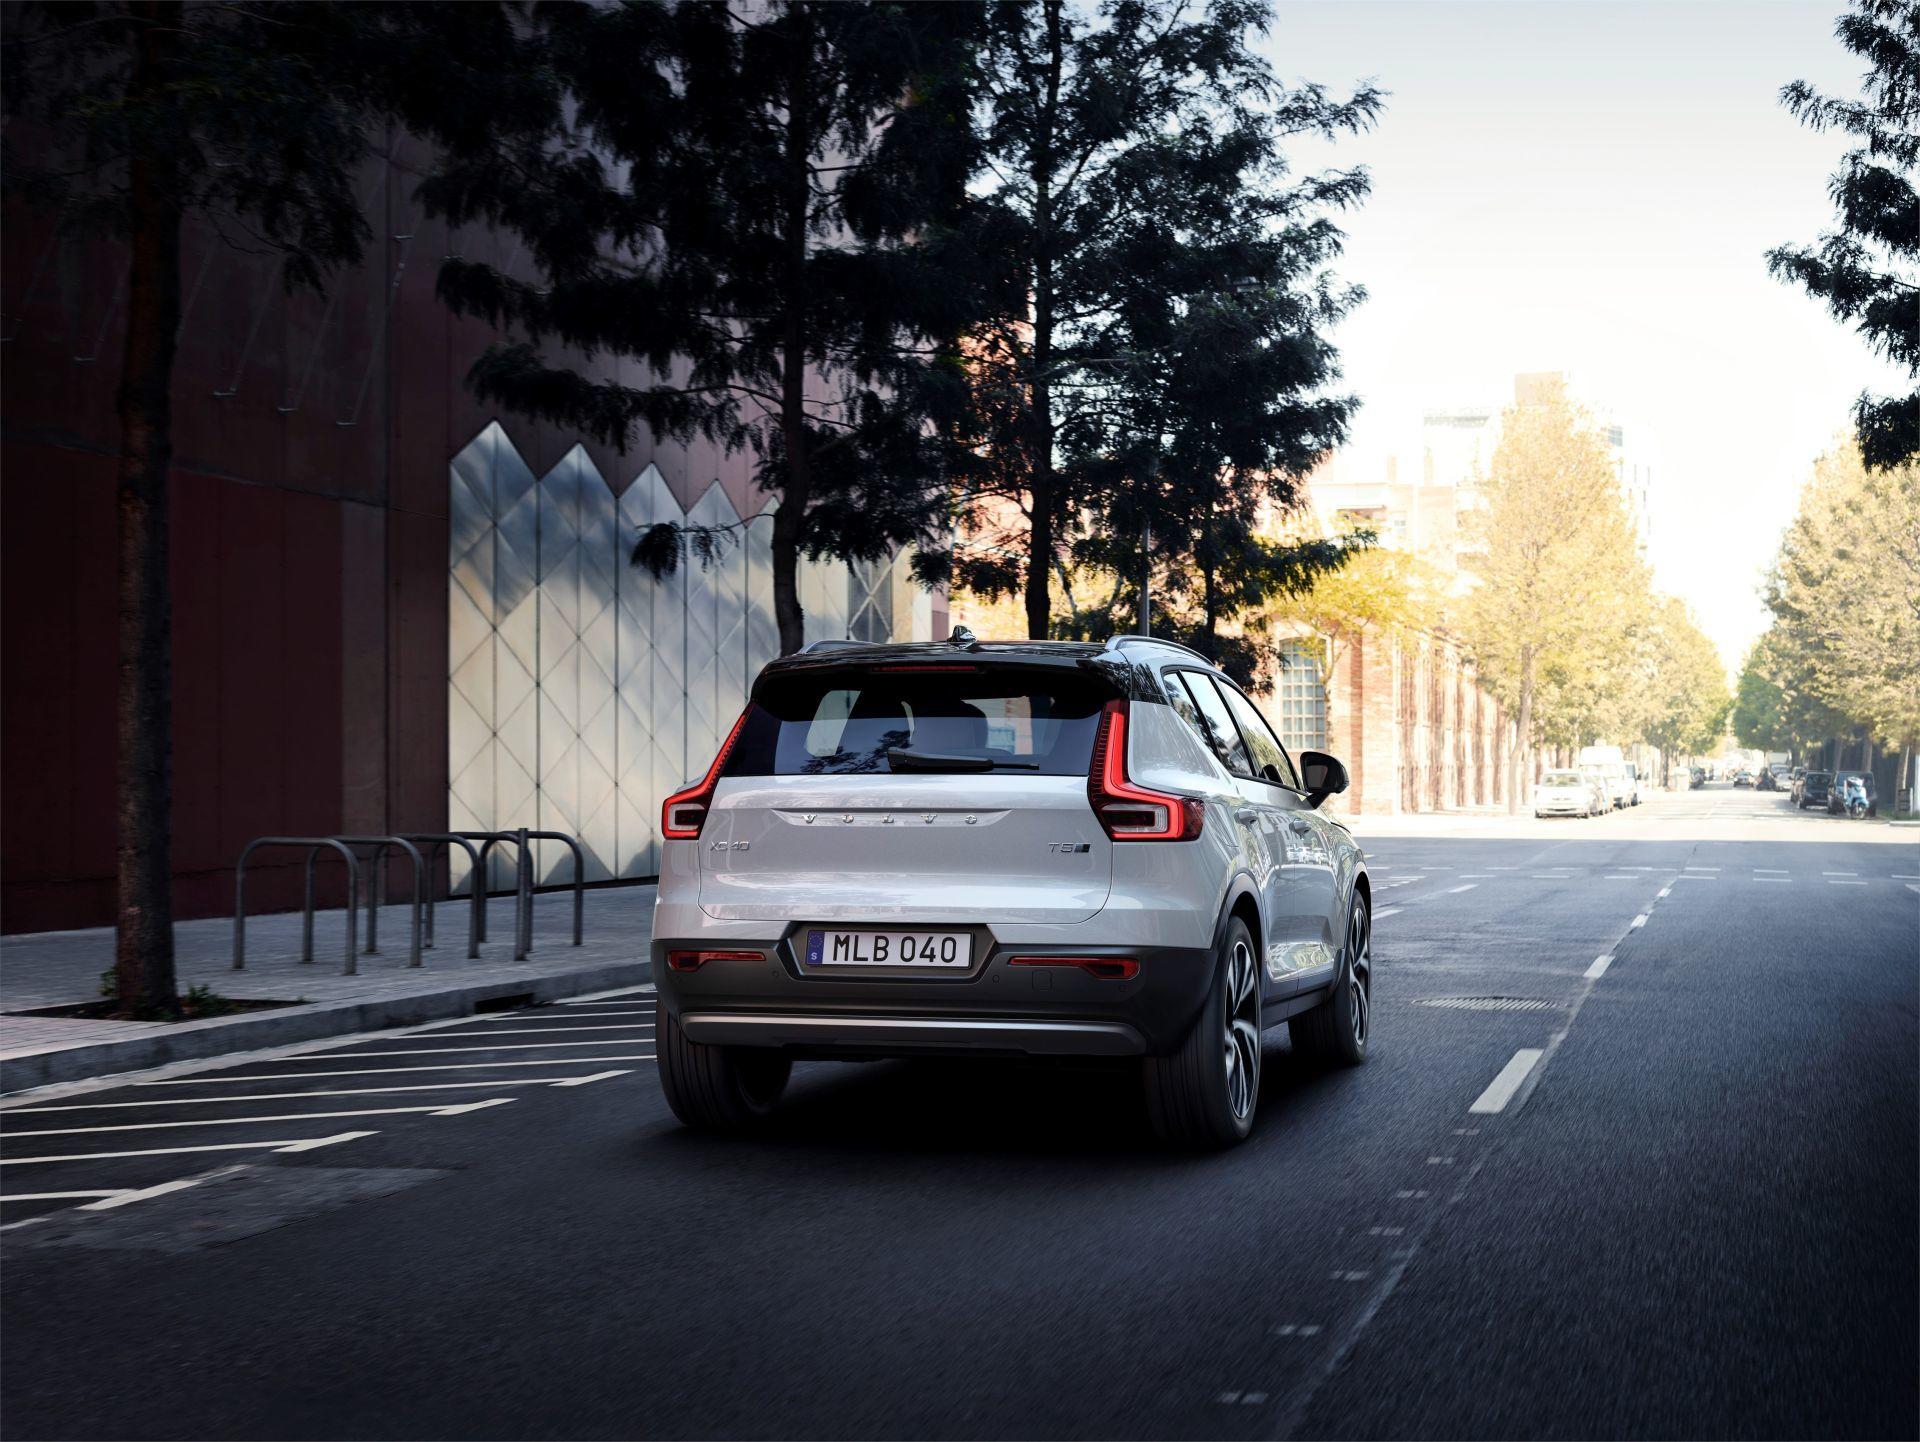 Volvo rompe todas sus previsiones con el XC40: Tienen que aumentar su producción debido a su éxito